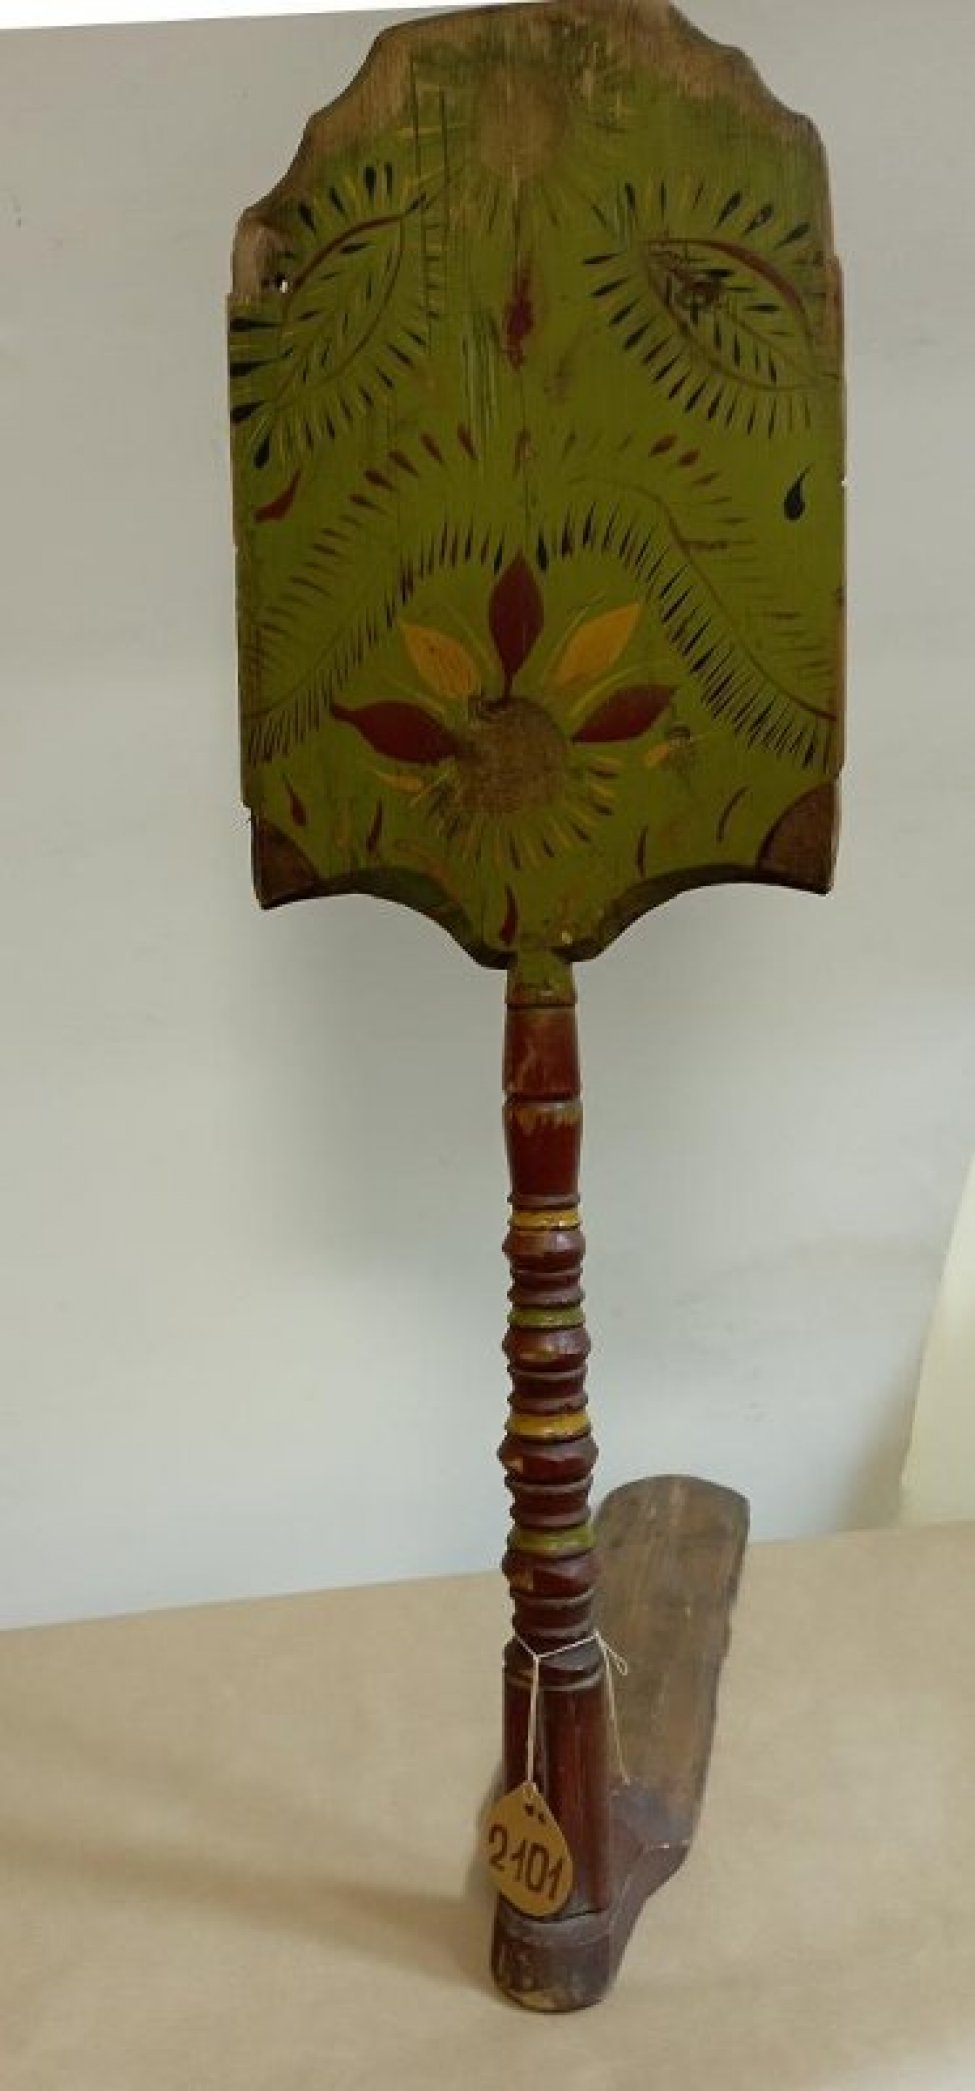 Фон лопатки светло-зеленый. Ножка точеная с прямоугольным шипом. Роспись: стилизованное изображение цветка с красными и желтыми лепестками, бронзовой сердцевинкой.